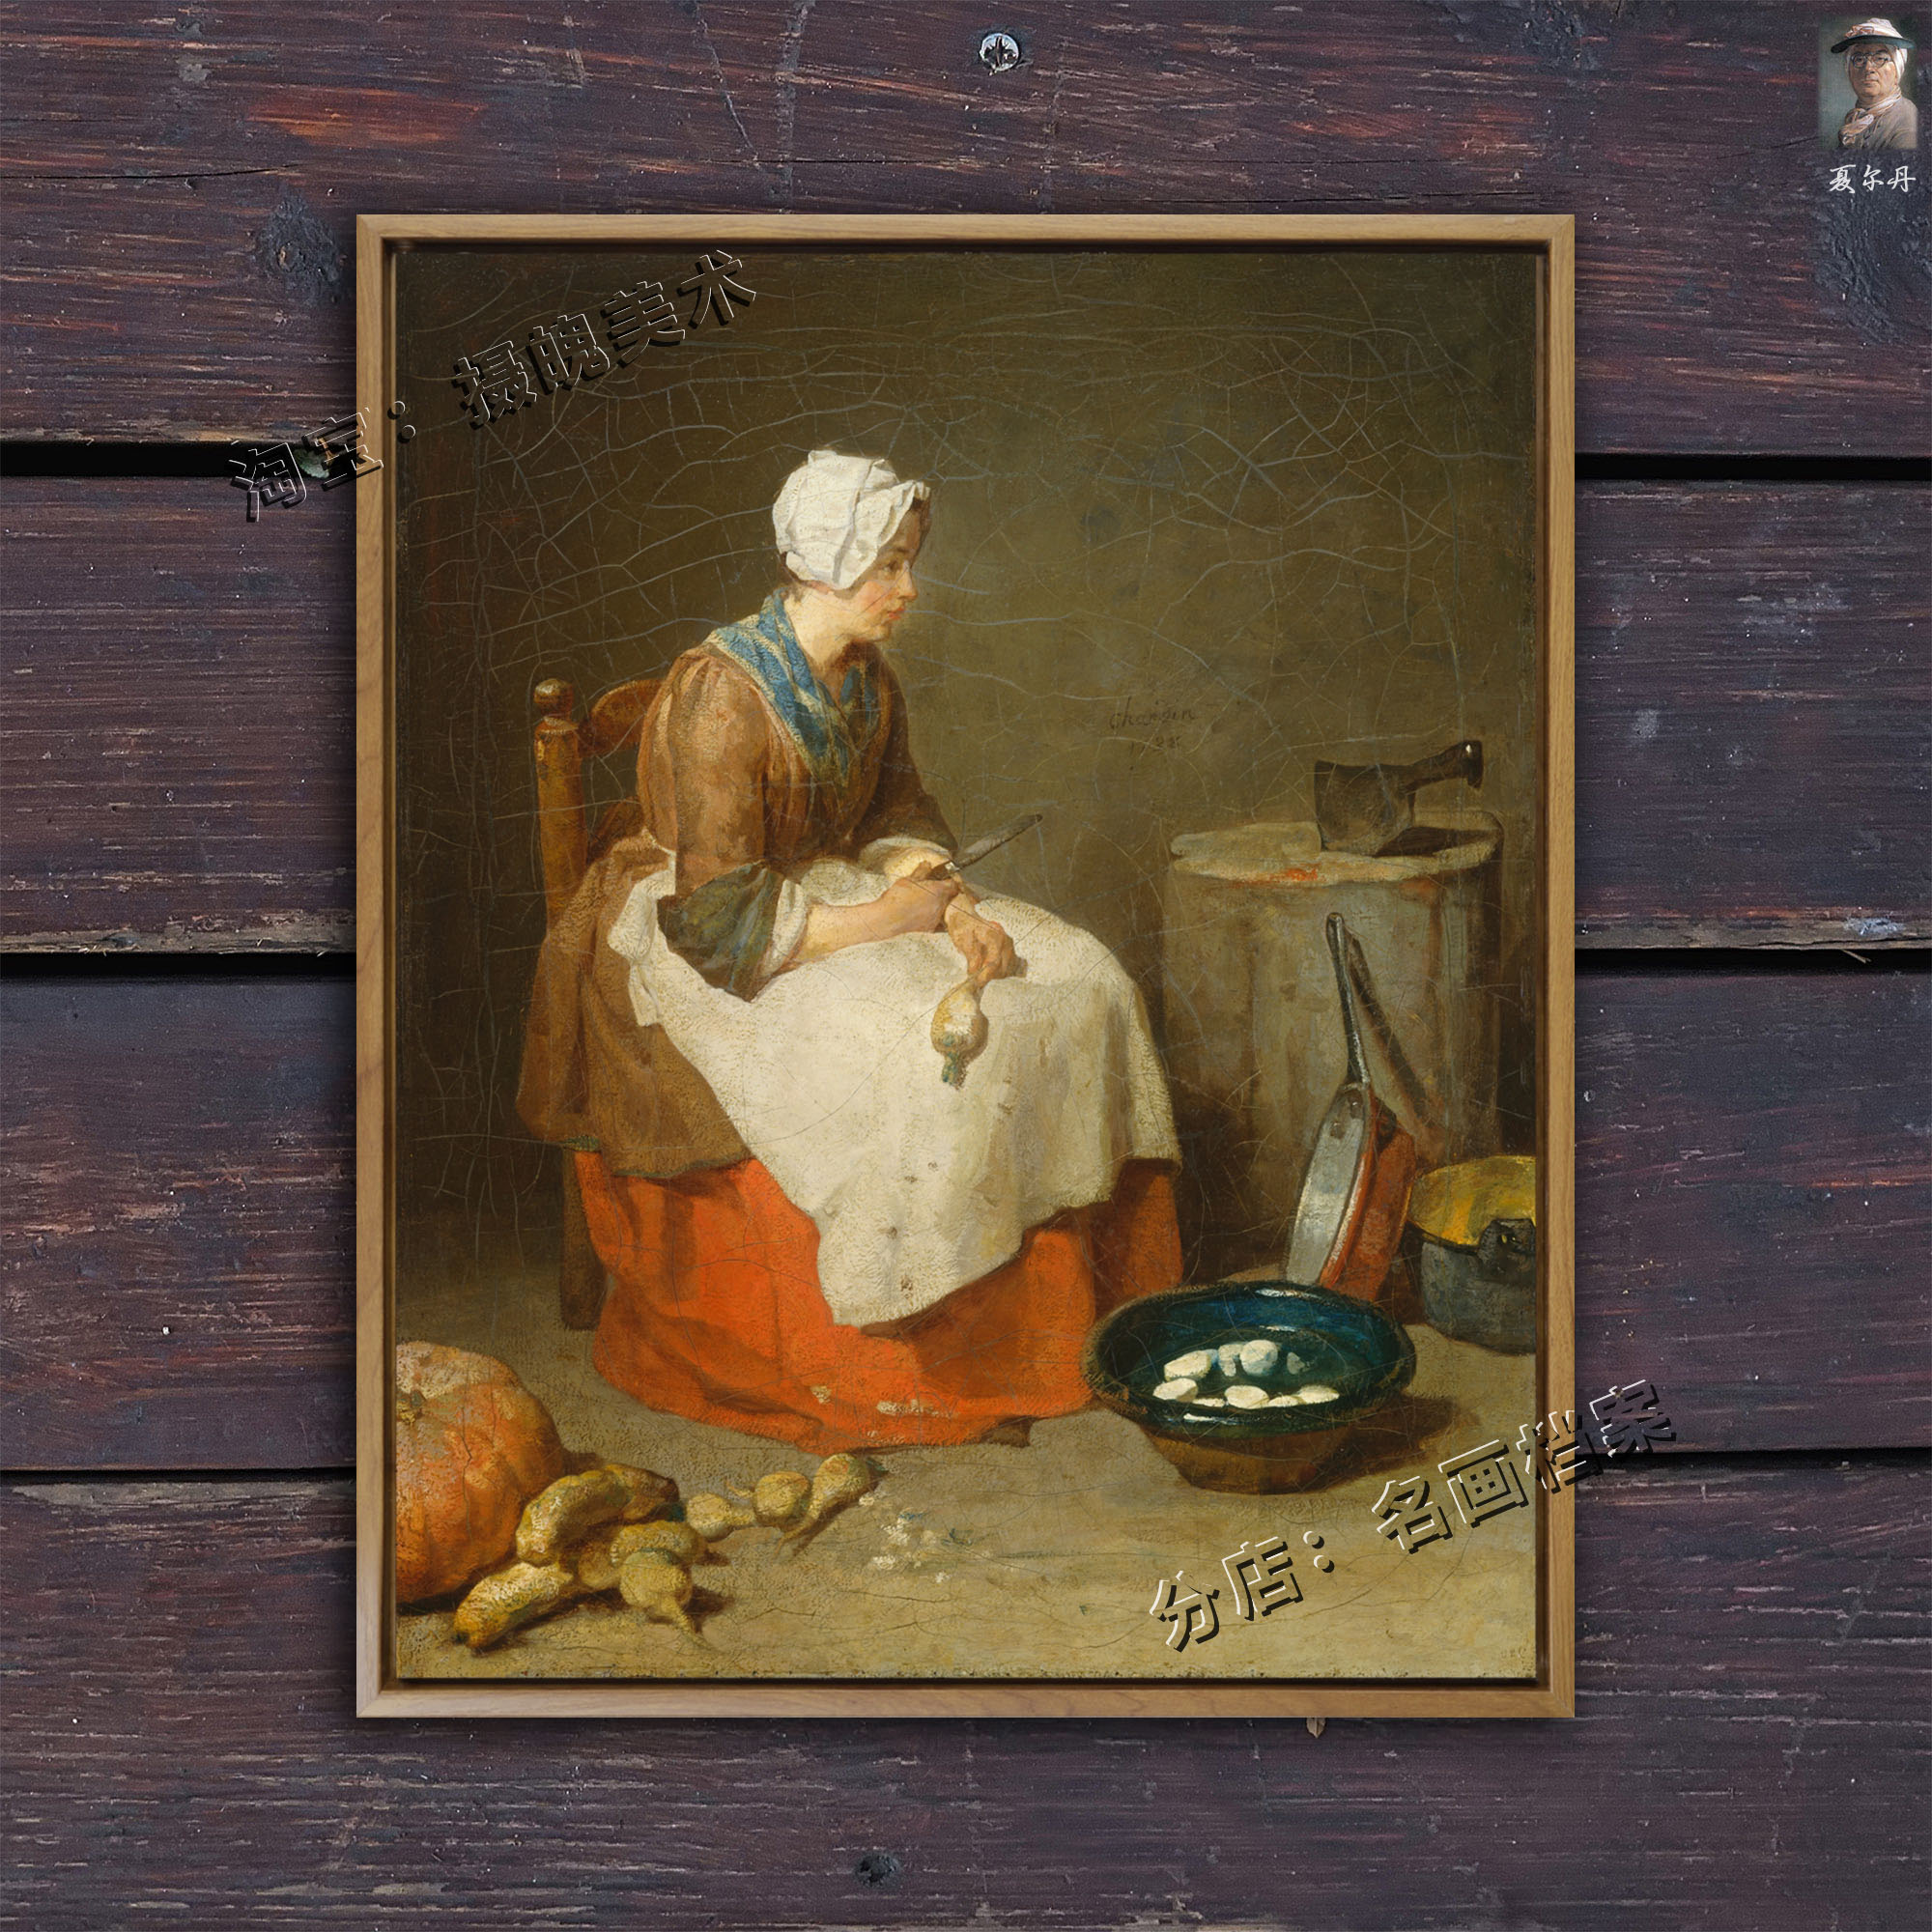 削蔬菜的少女 The Kitchen Maid 夏尔丹 厨娘法式乡村挂画 18世纪